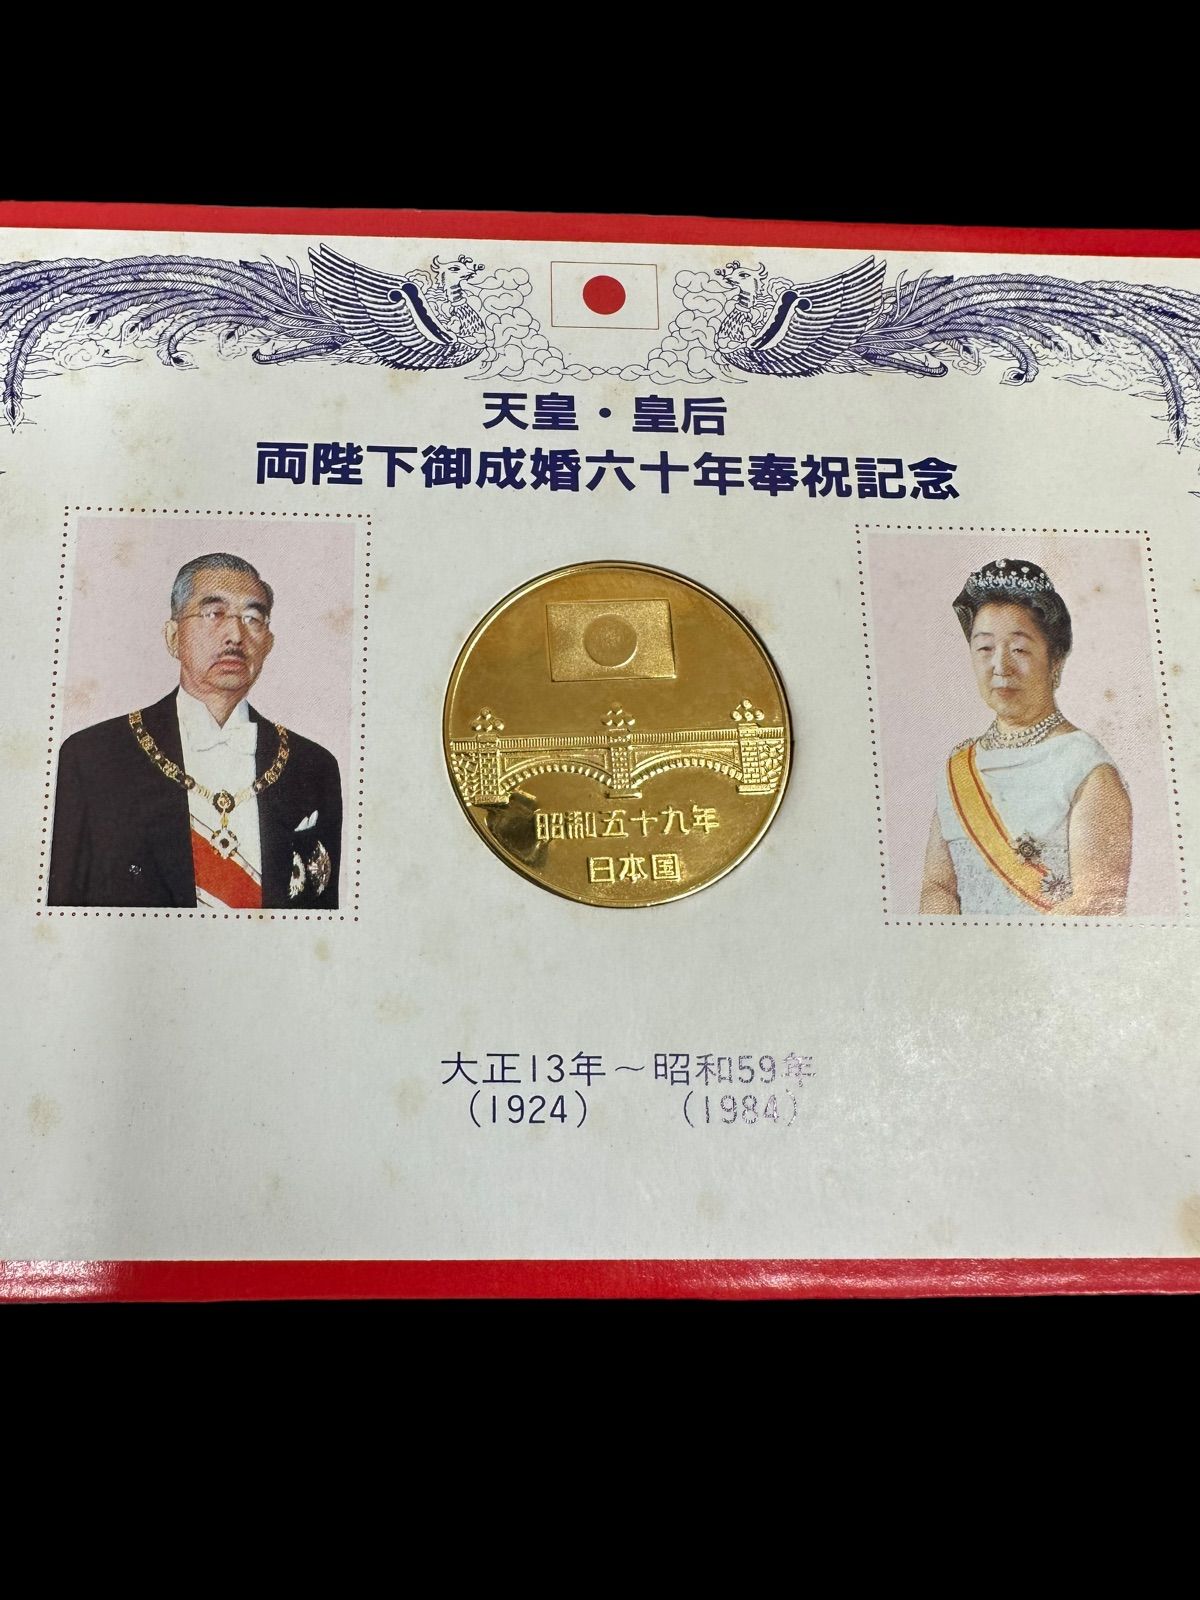 天皇・皇后両陛下御成婚六十年奉祝記念メダル 79-